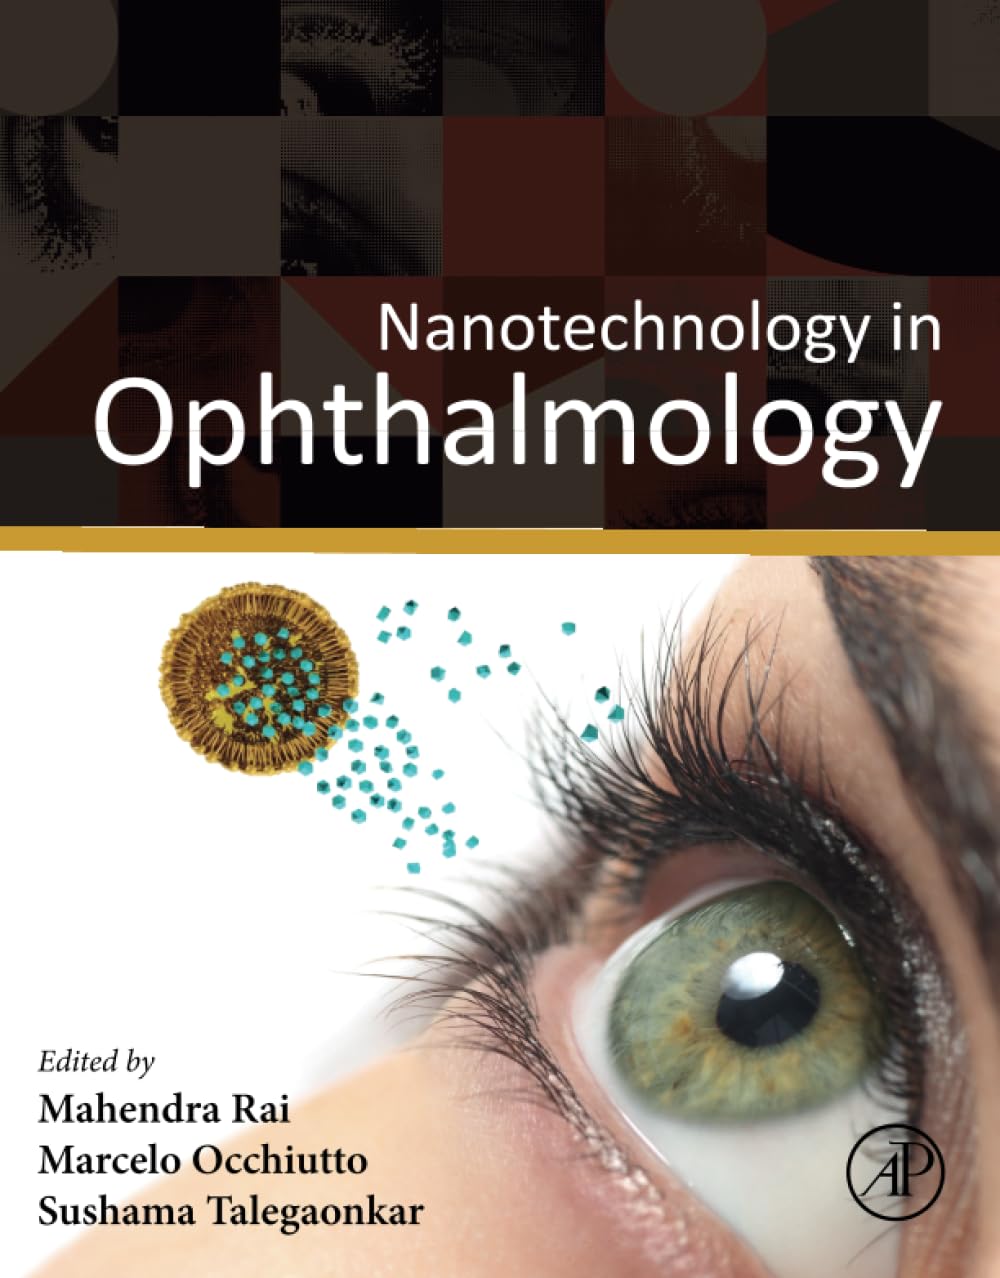 Nanotechnology in Ophthalmology by Mahendra Rai